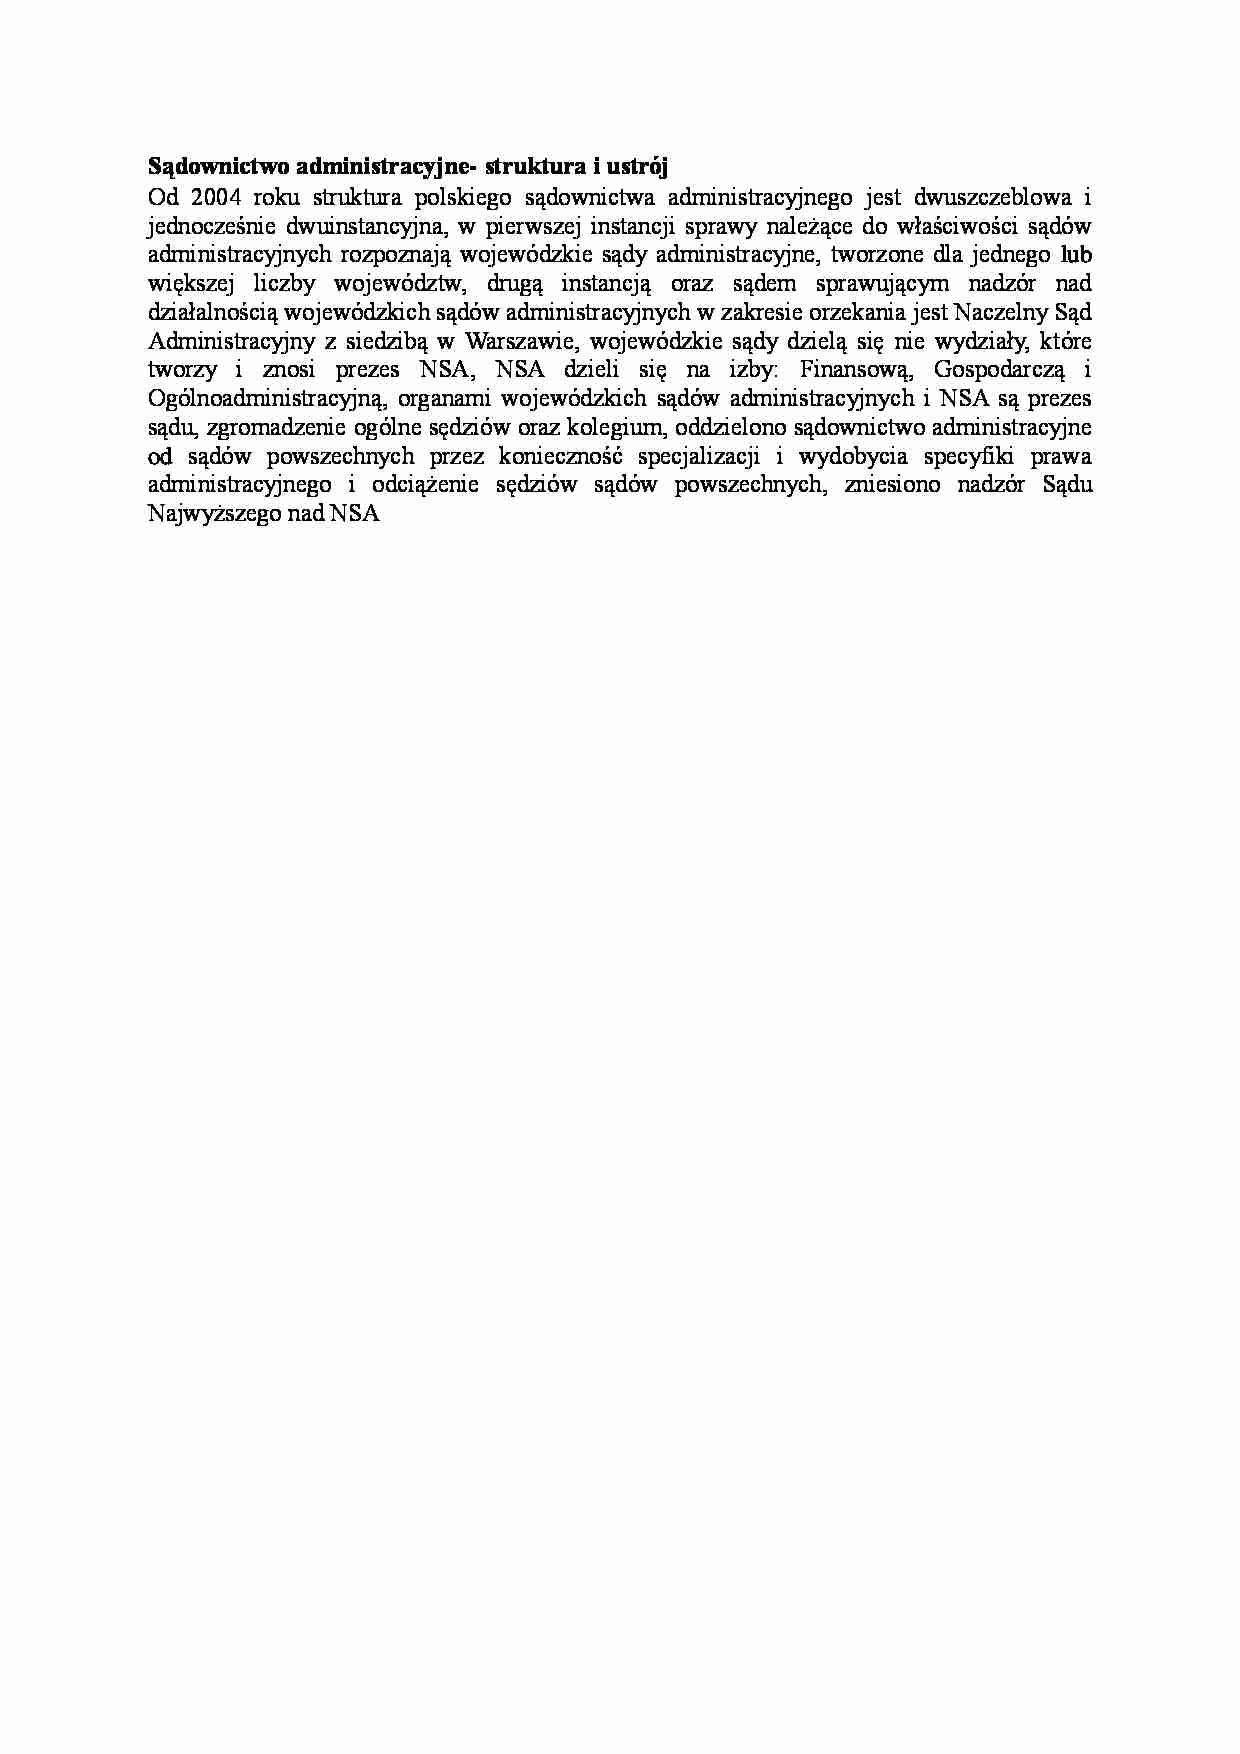 Sądownictwo administracyjne - struktura i ustrój - opracowanie - strona 1